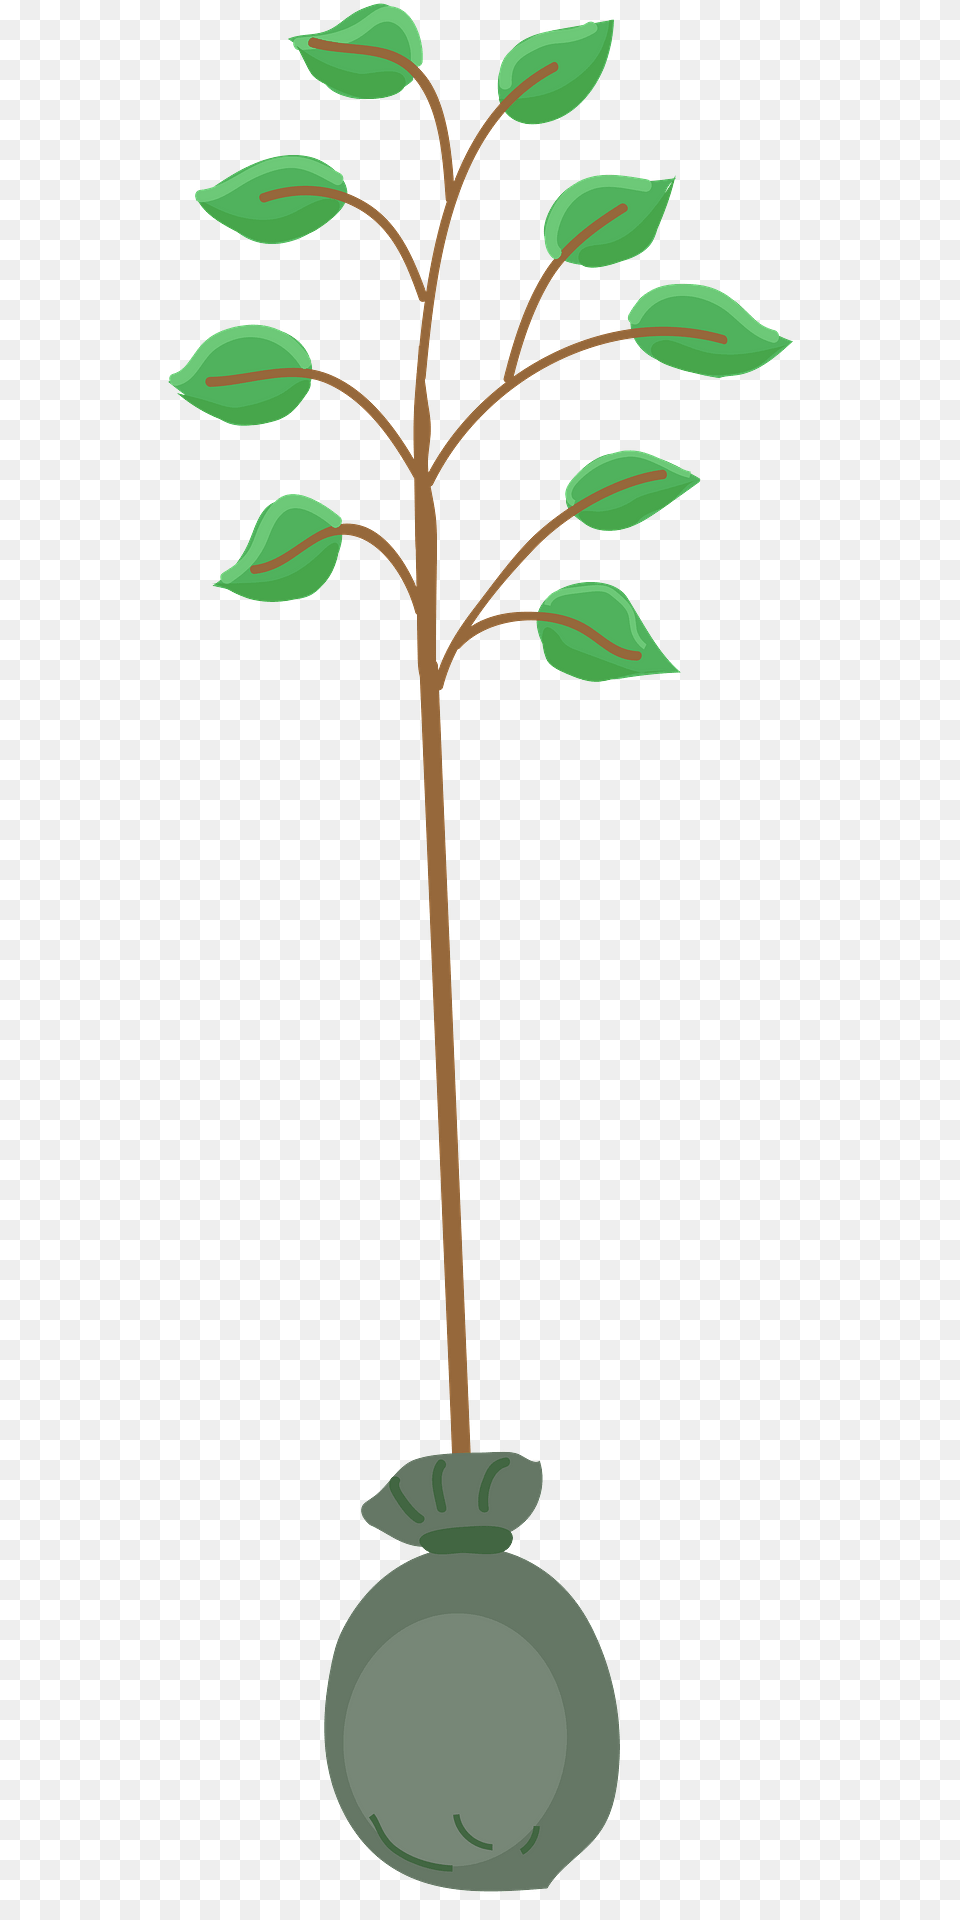 Tree Seedling Clipart, Leaf, Plant, Bud, Flower Free Transparent Png